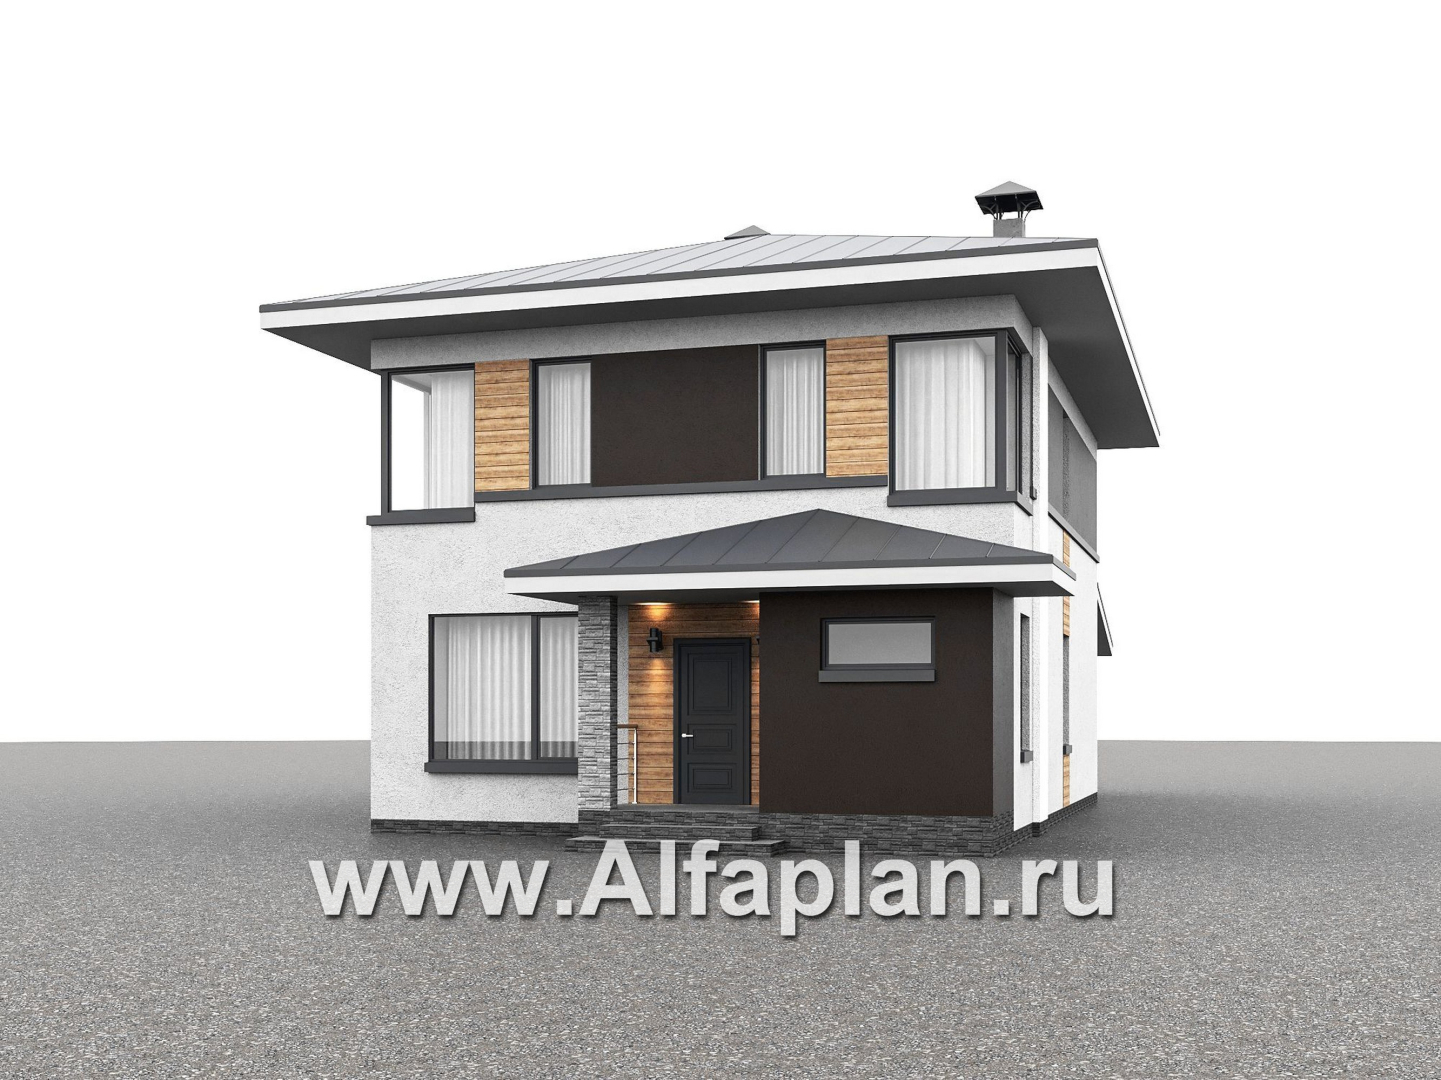 Проекты домов Альфаплан - "Генезис" - проект дома, 2 этажа, с террасой в стиле Райта - дополнительное изображение №1